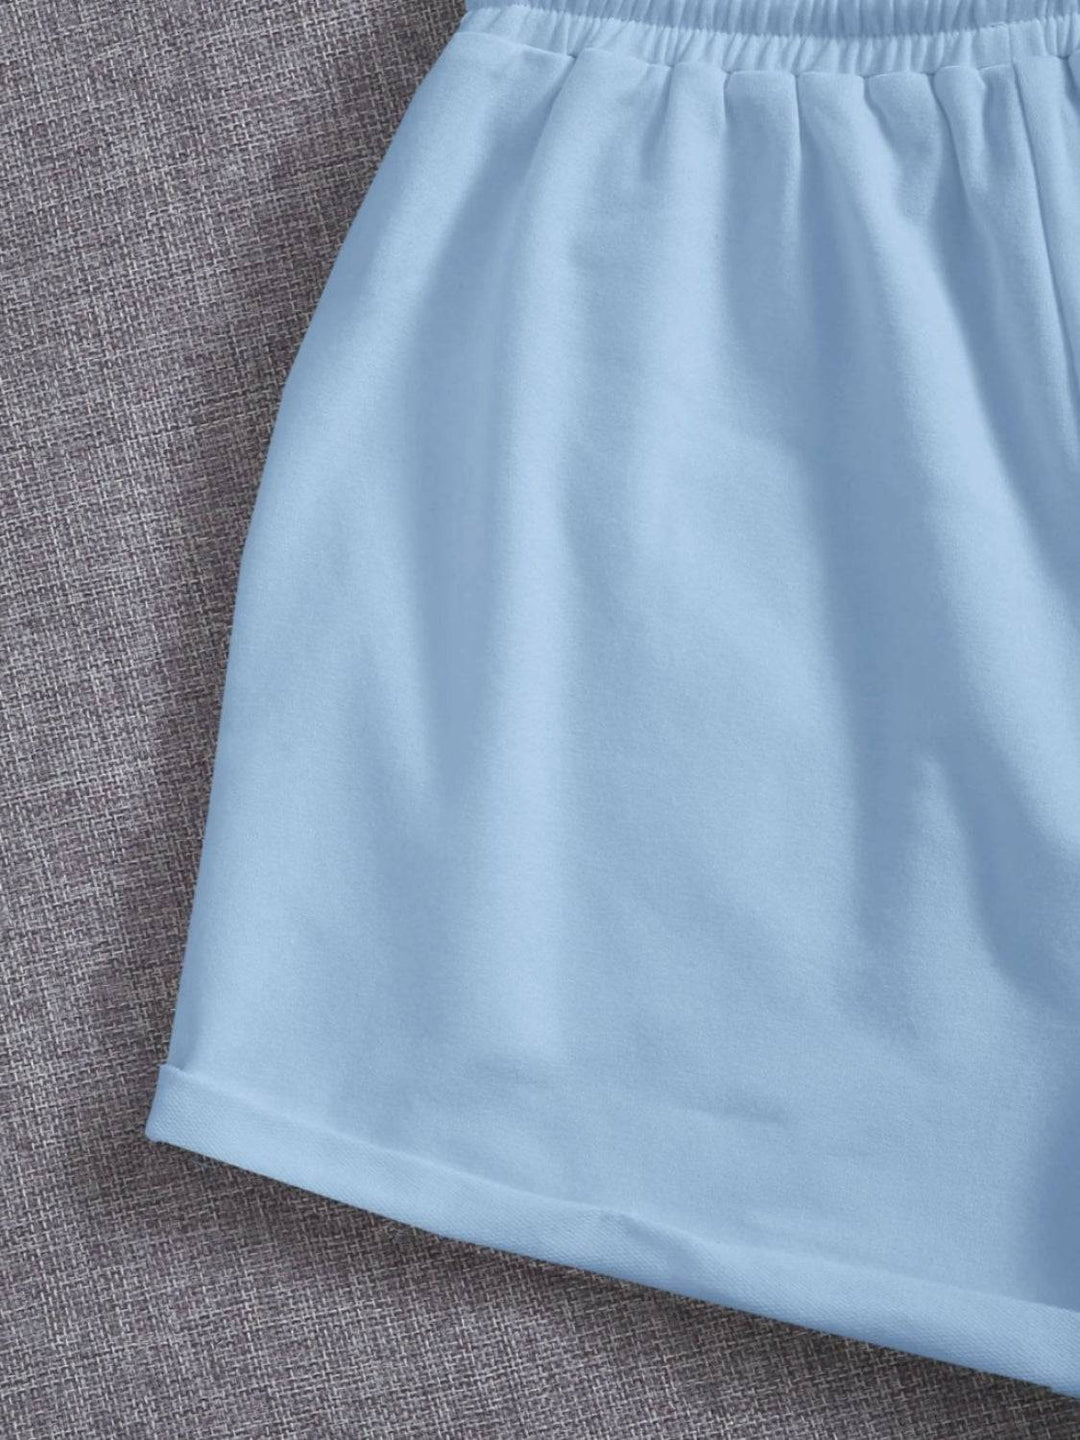 a close up of a light blue skirt